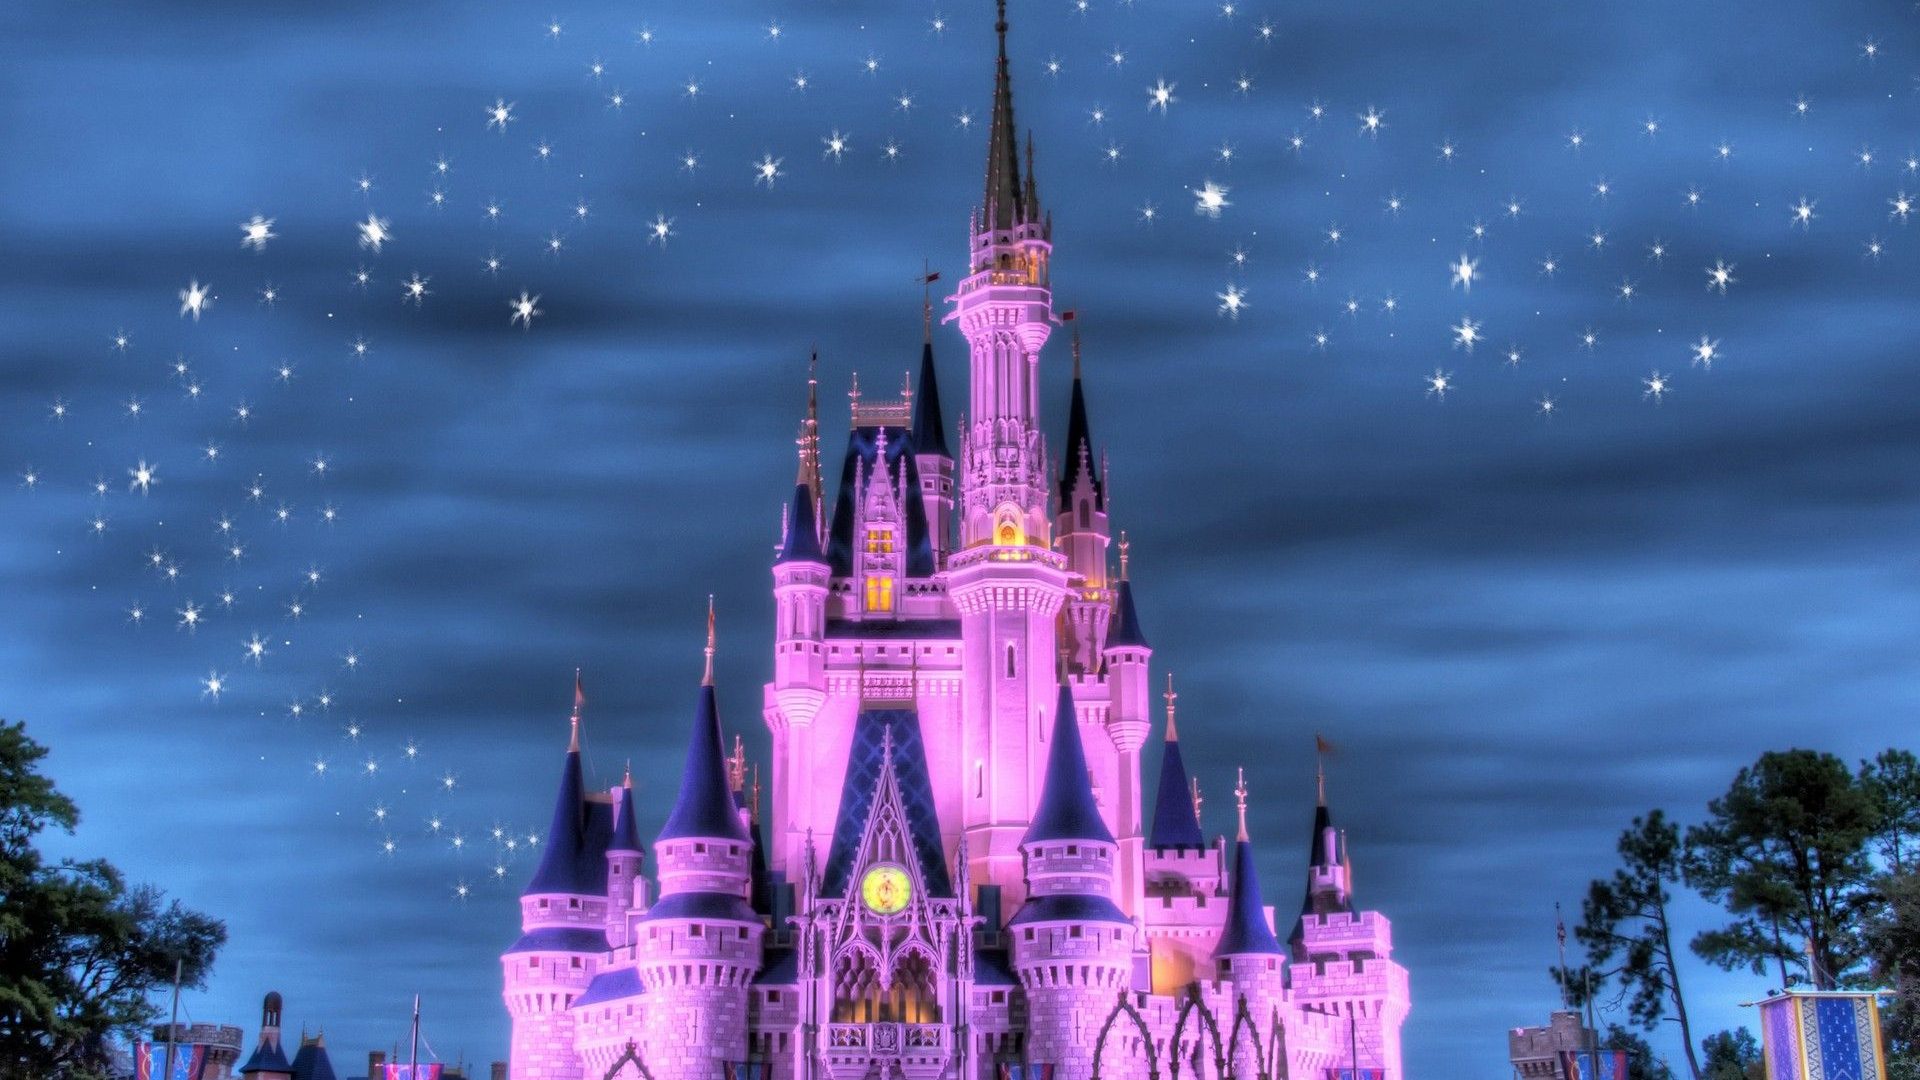 Disney Castle Wallpapers HD | PixelsTalk.Net